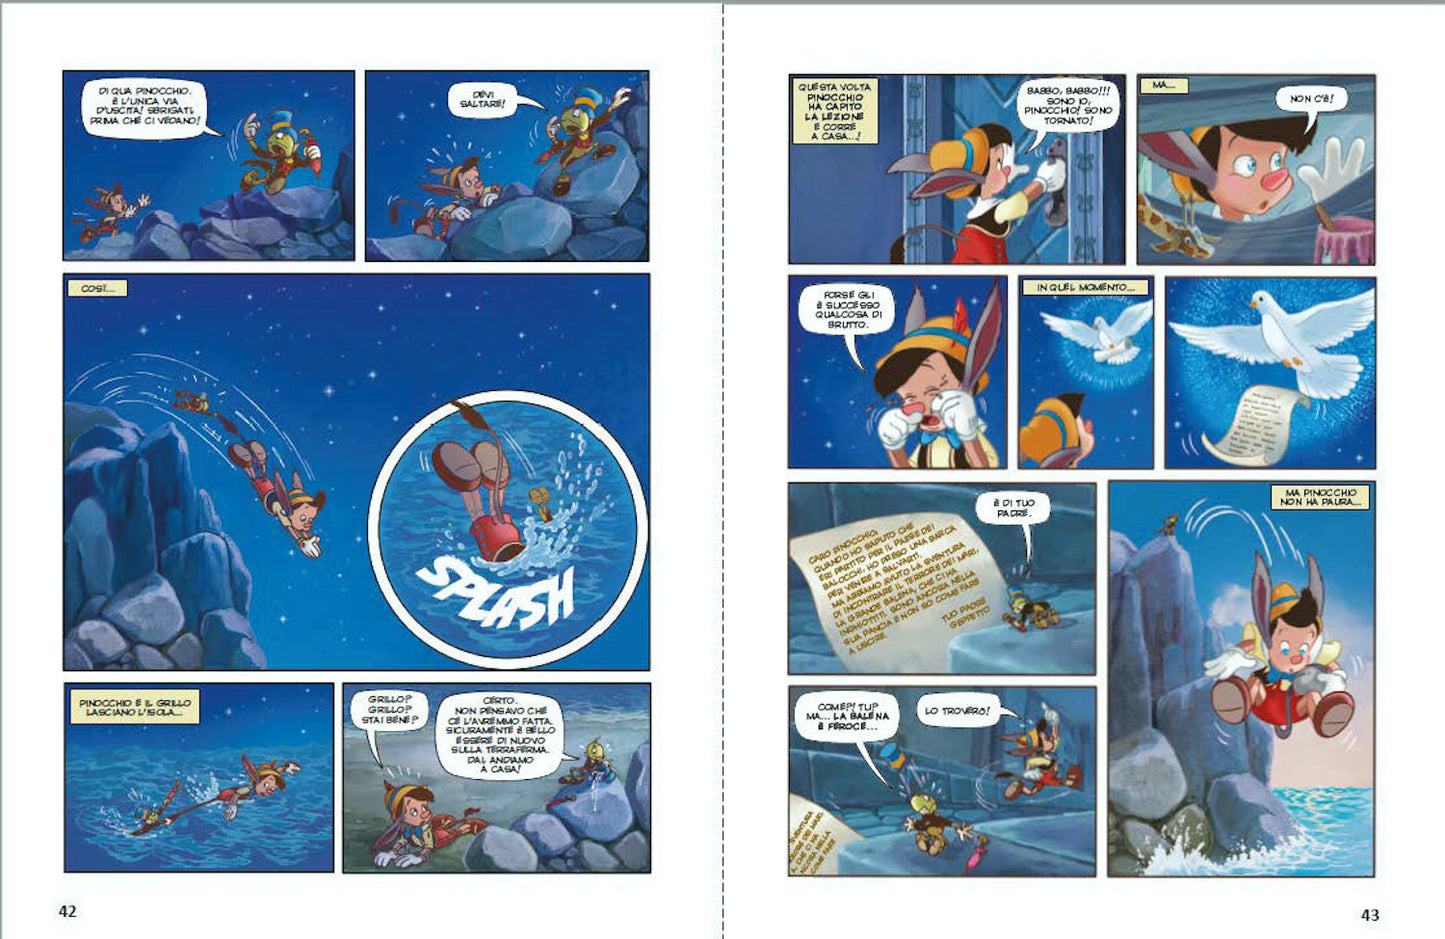 Pinocchio La storia a fumetti Edizione limitata::Disney 100 Anni di meravigliose emozioni